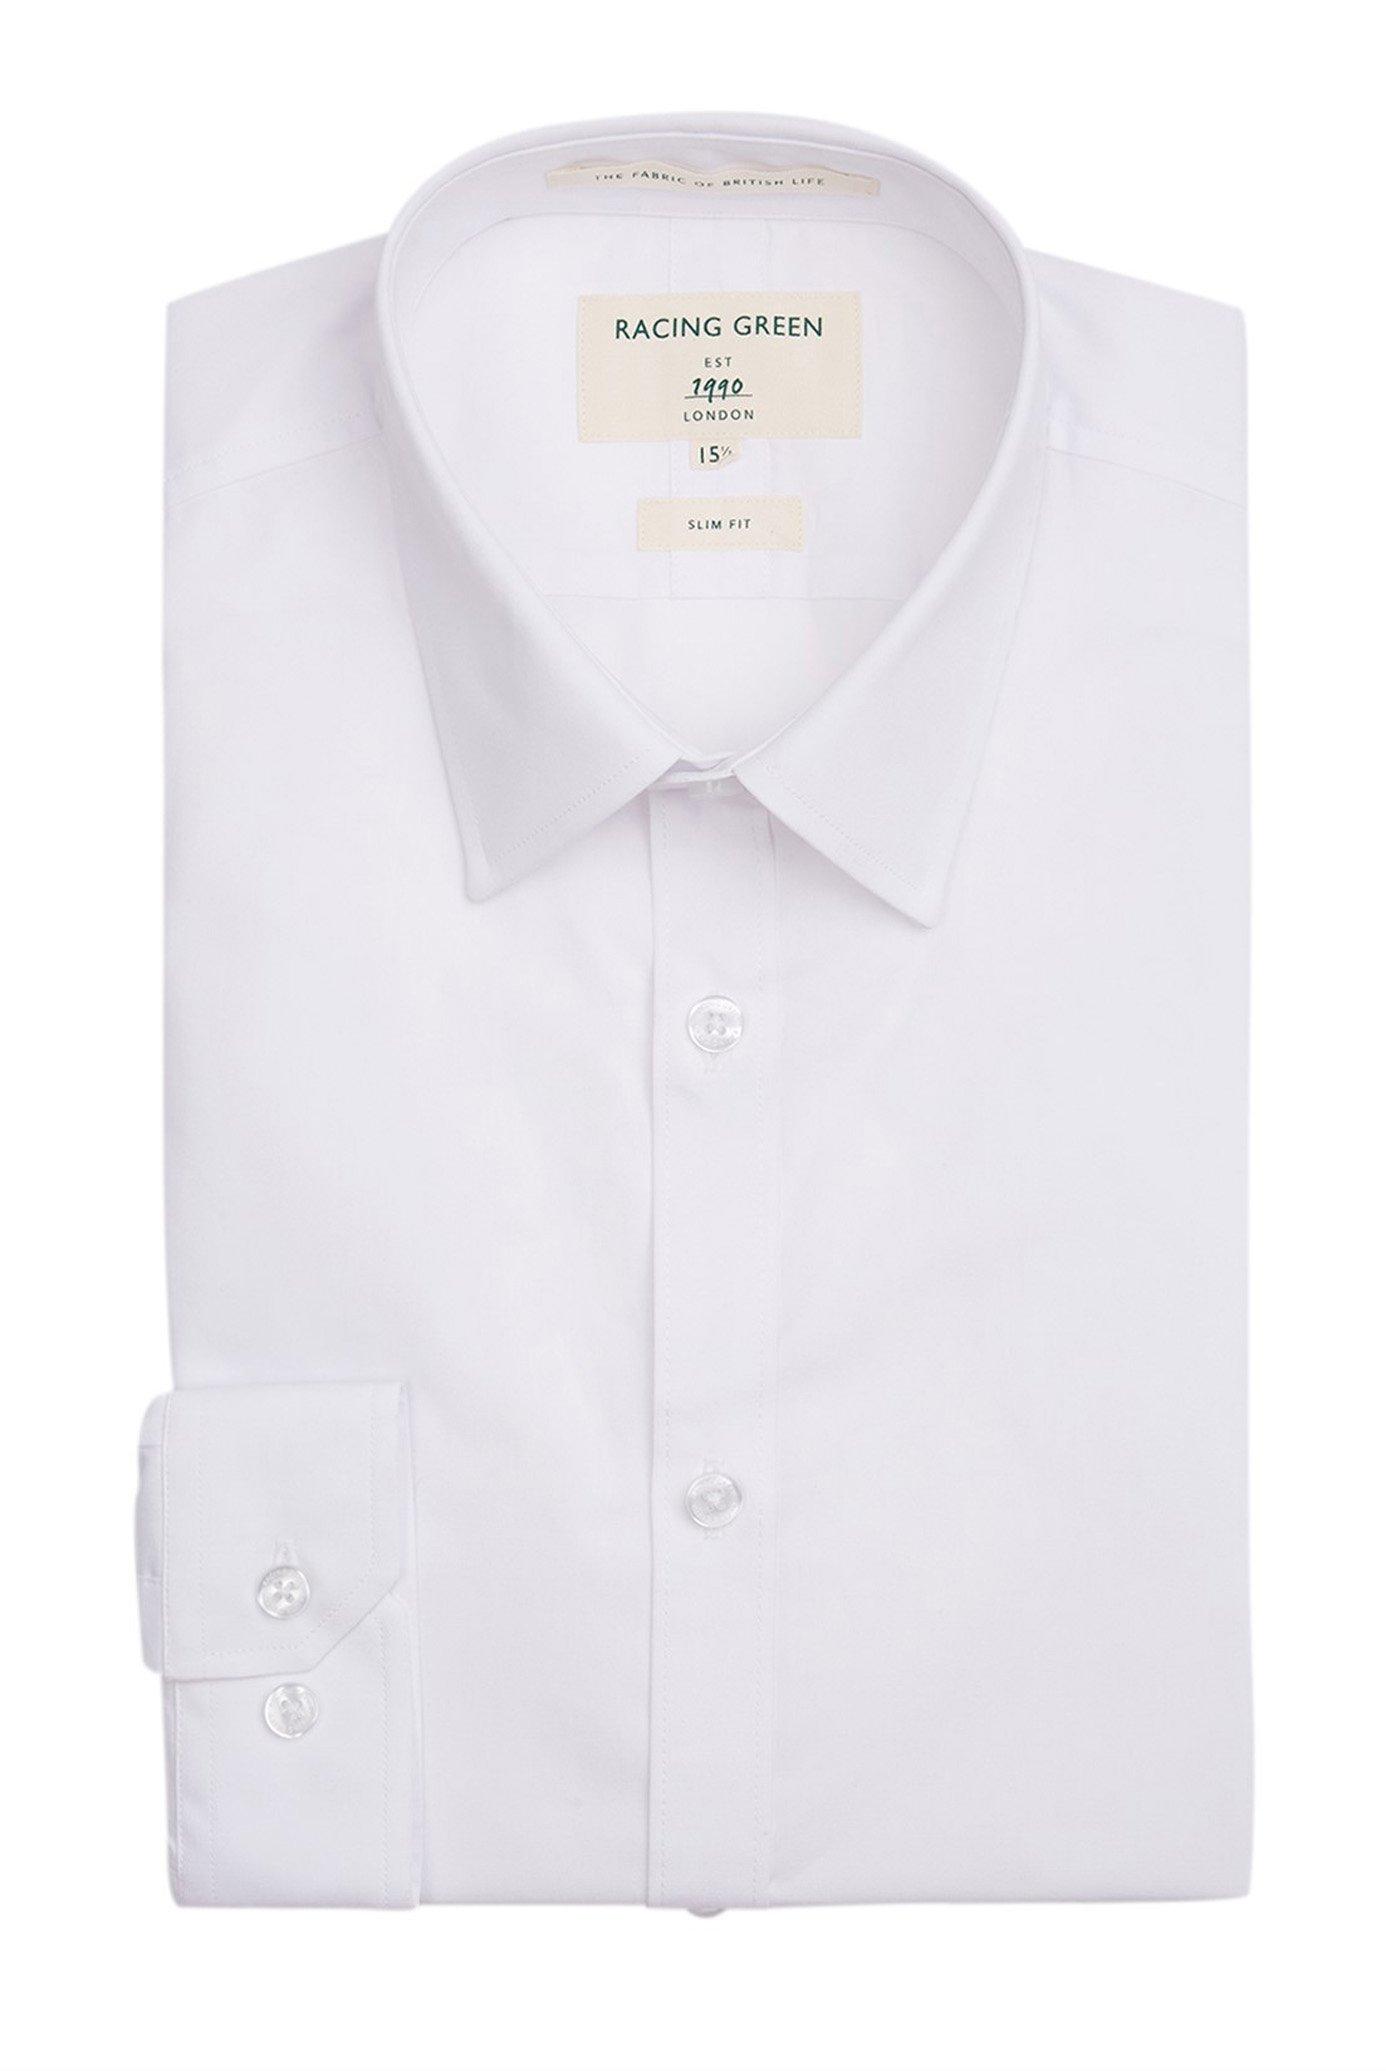 цена Рубашка узкого кроя из поплина Racing Green, белый